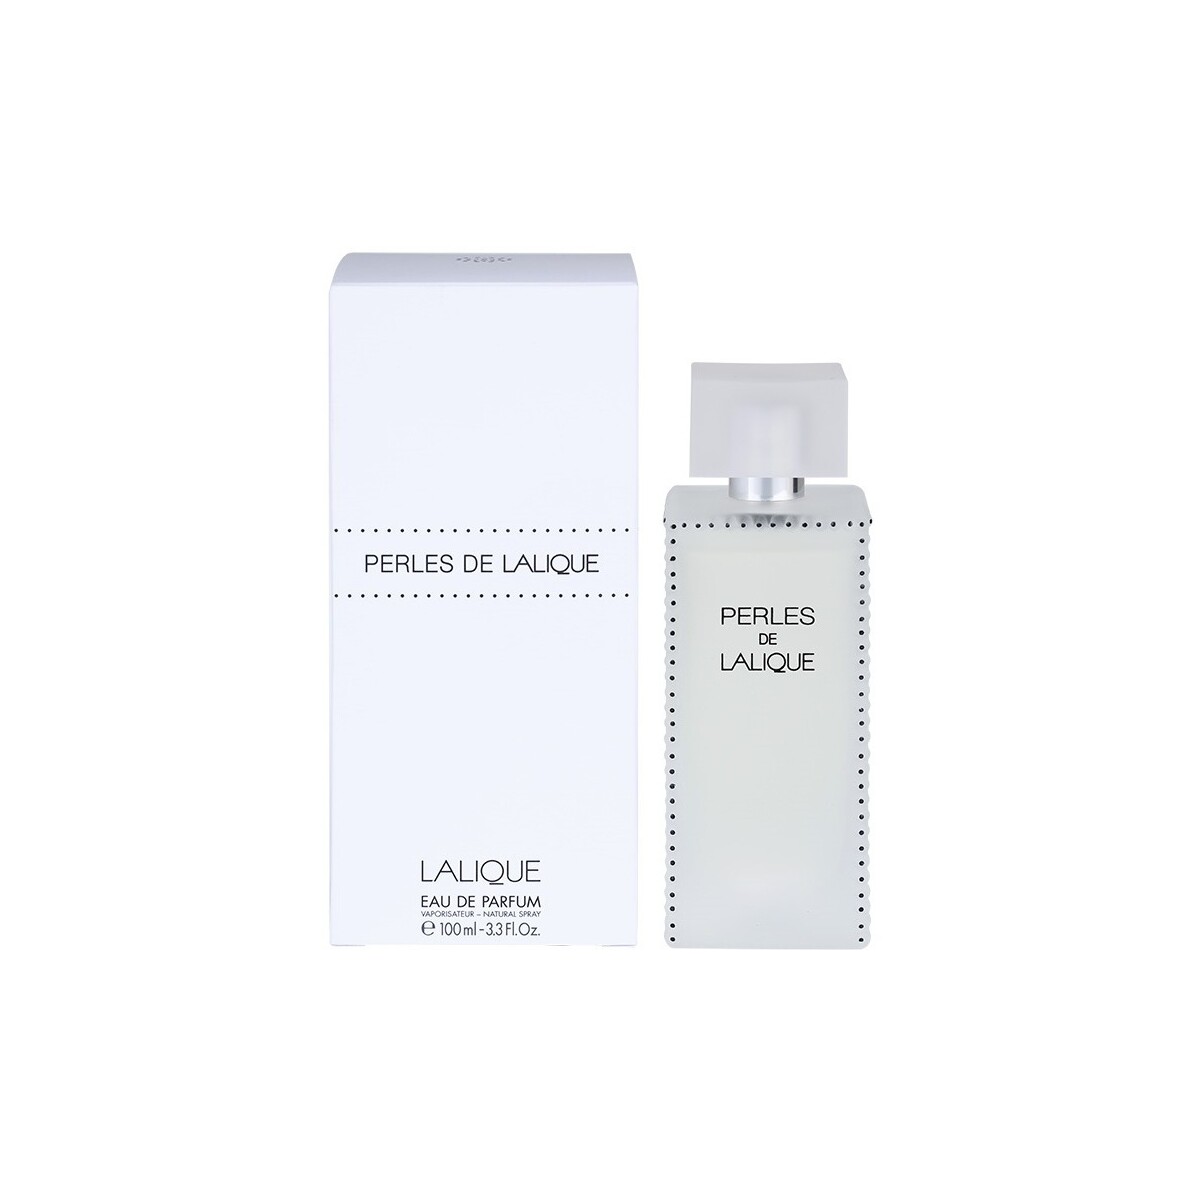 Belleza Mujer Perfume Lalique Perles - Eau de Parfum - 100ml - Vaporizador Perles - perfume - 100ml - spray